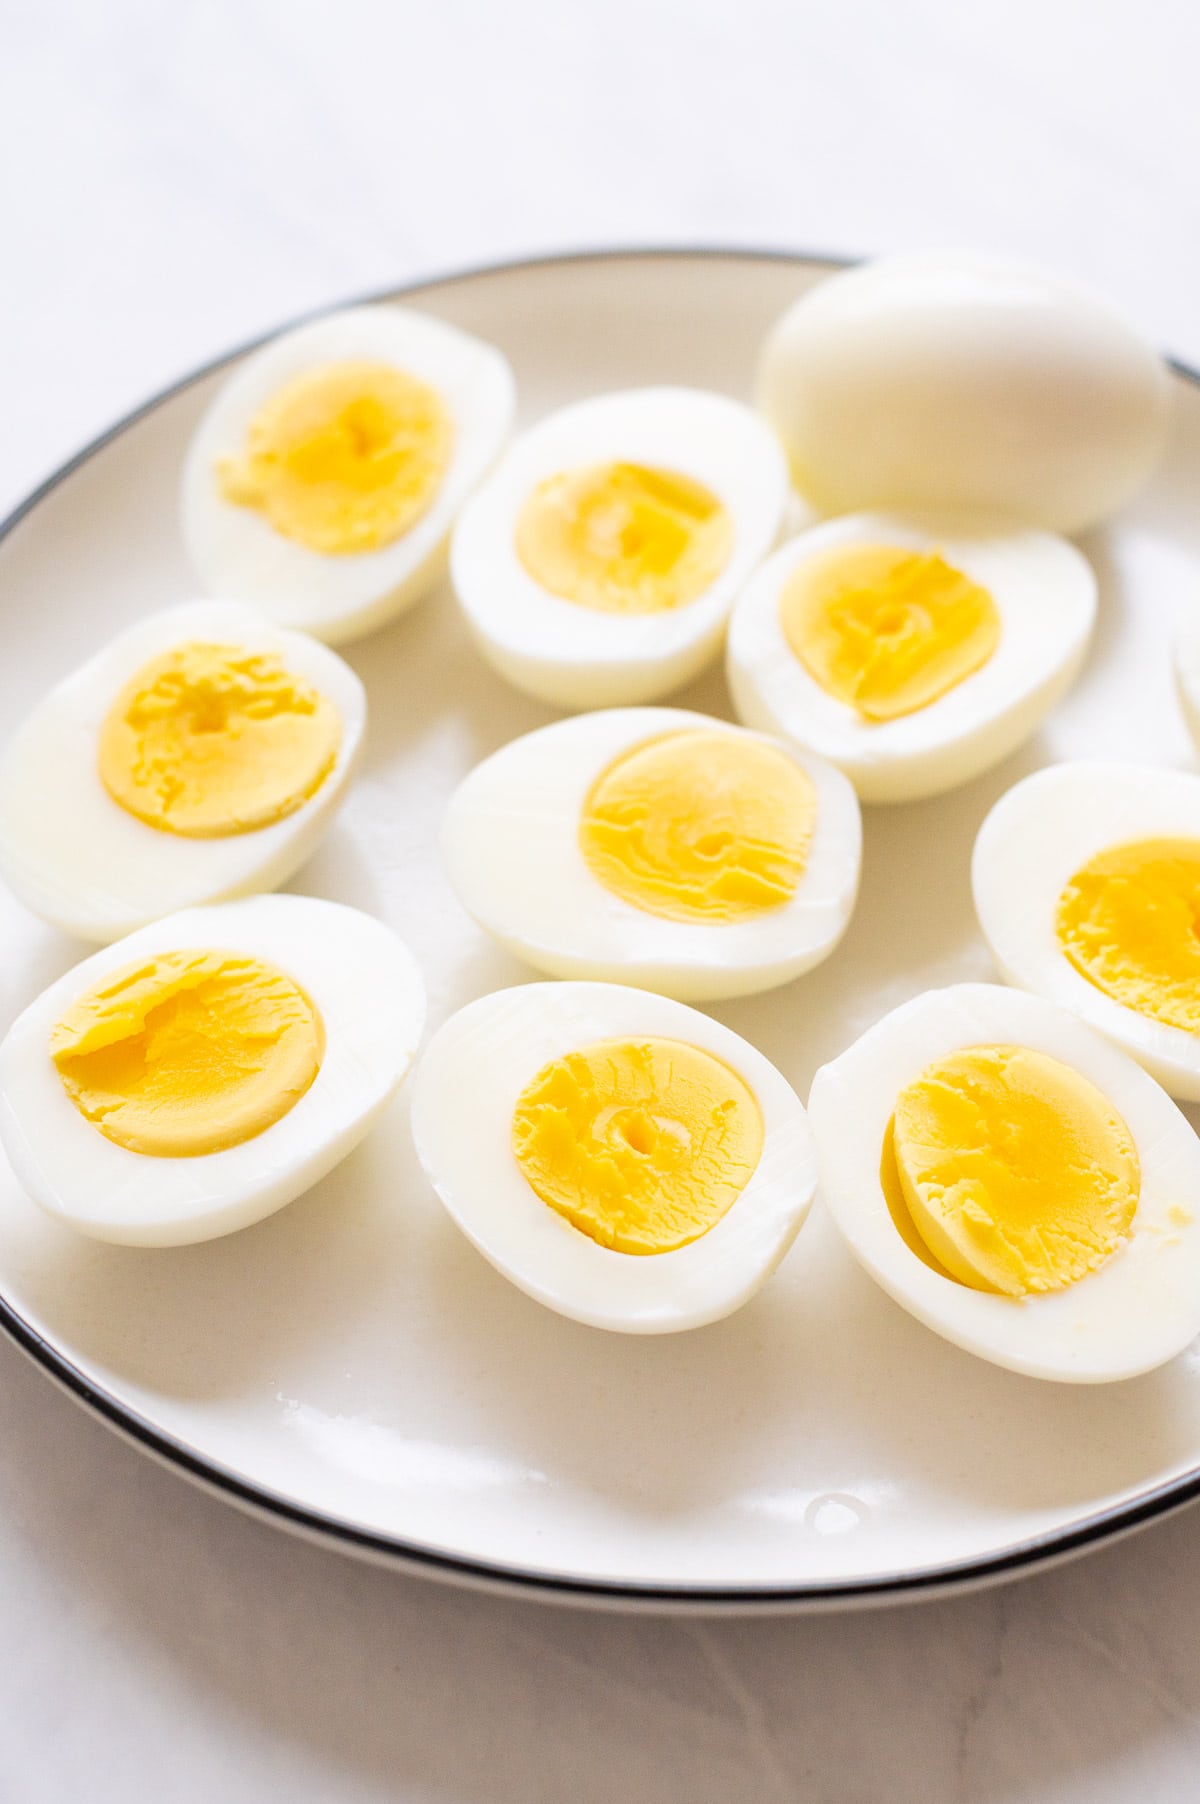 Sliced hard boiled eggs on white plate.